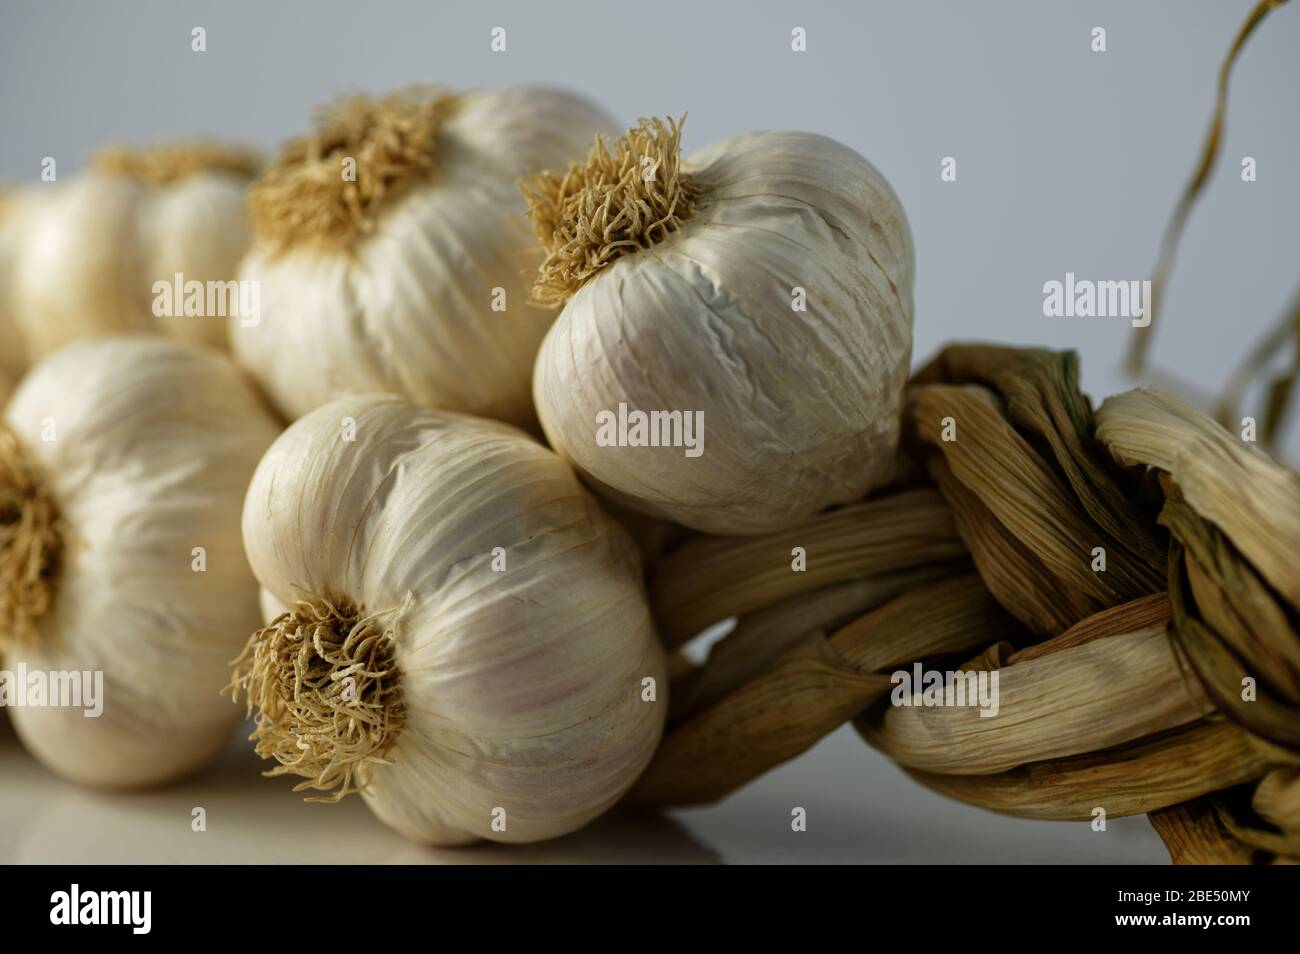 La pelle bianca cremosa dei bulbi d'aglio in contrasto con i loro gambi secchi che sono stati intrecciati Foto Stock